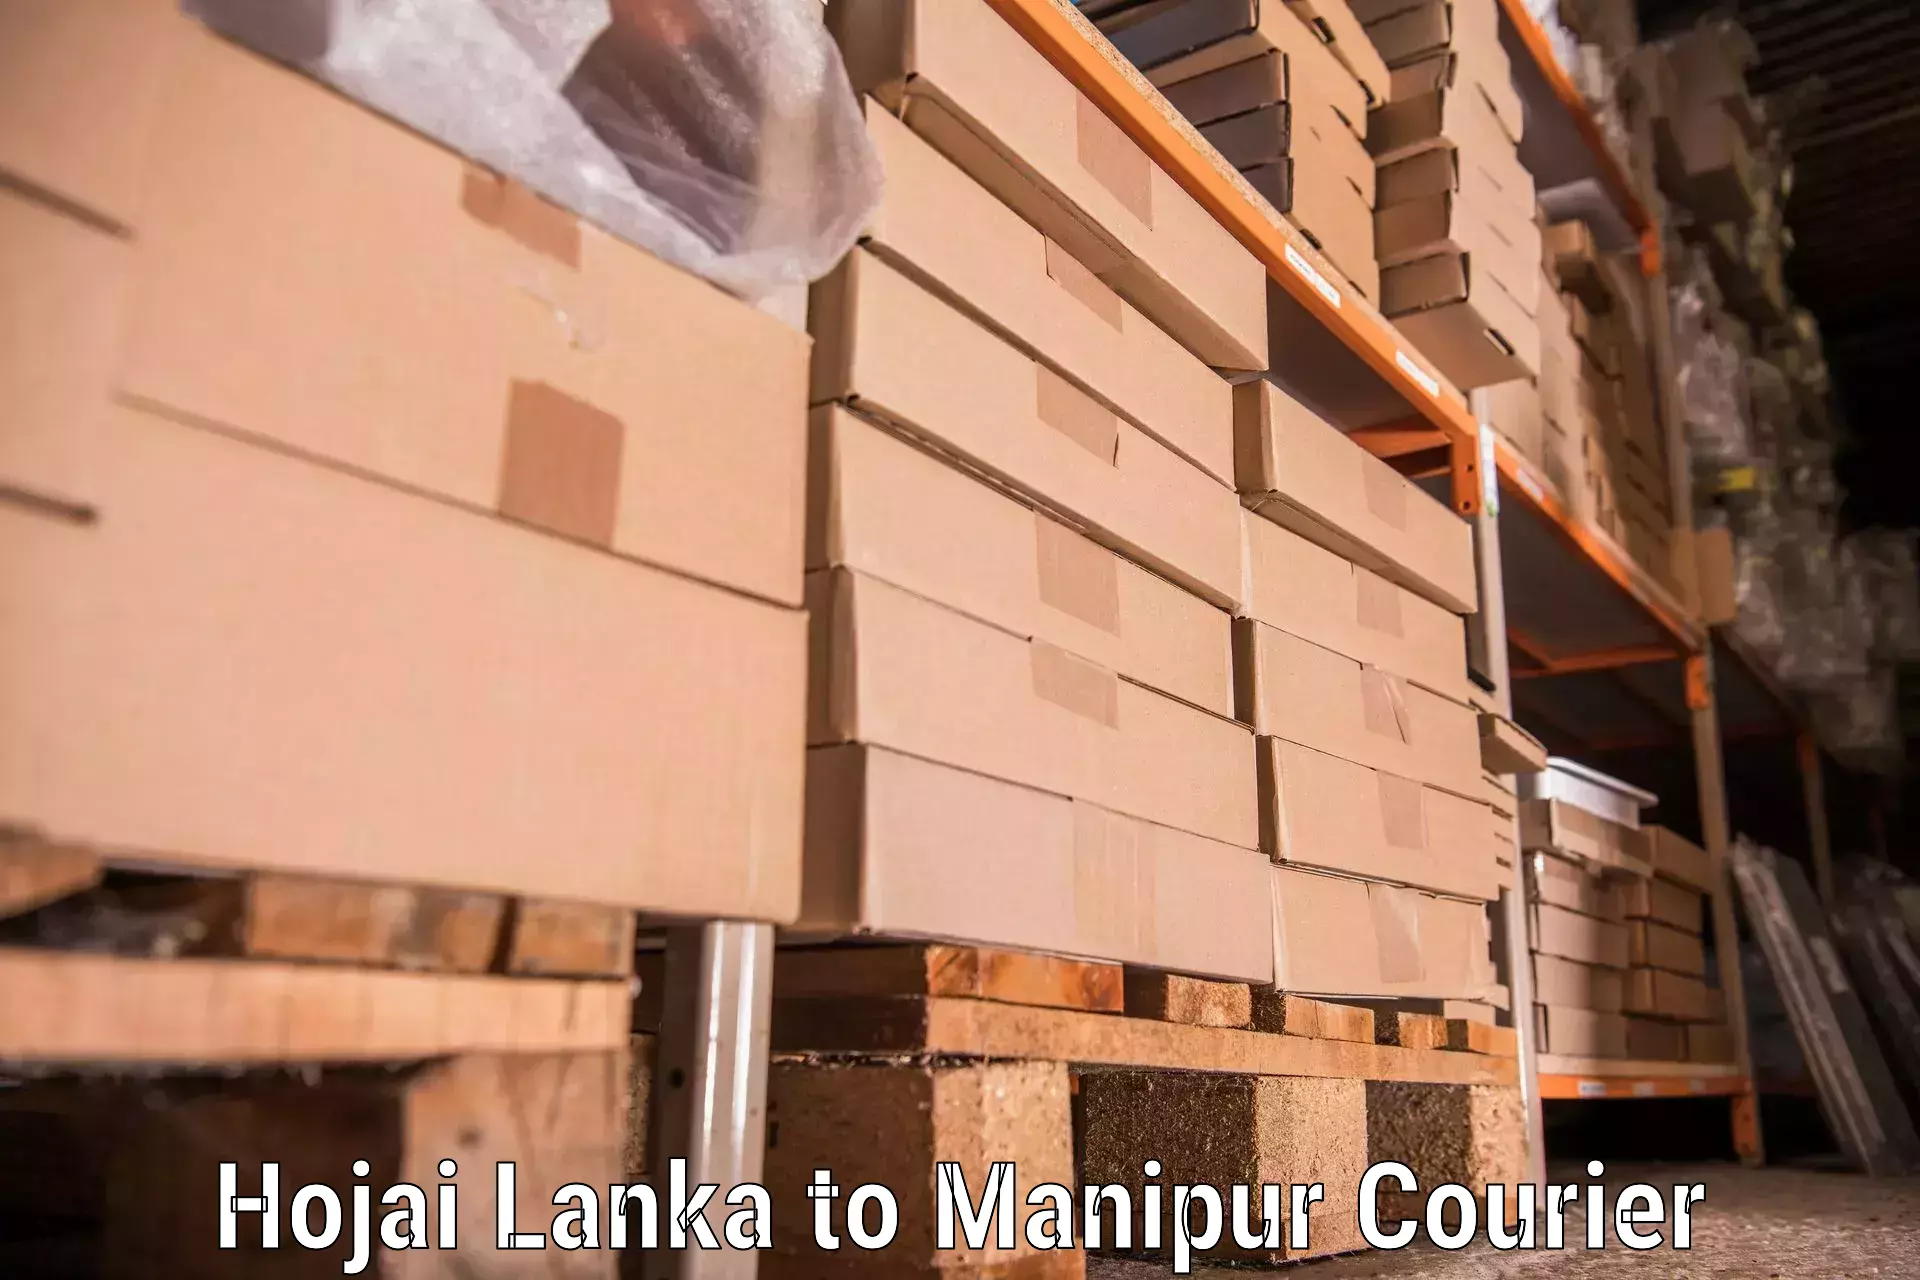 Moving and handling services Hojai Lanka to Moirang